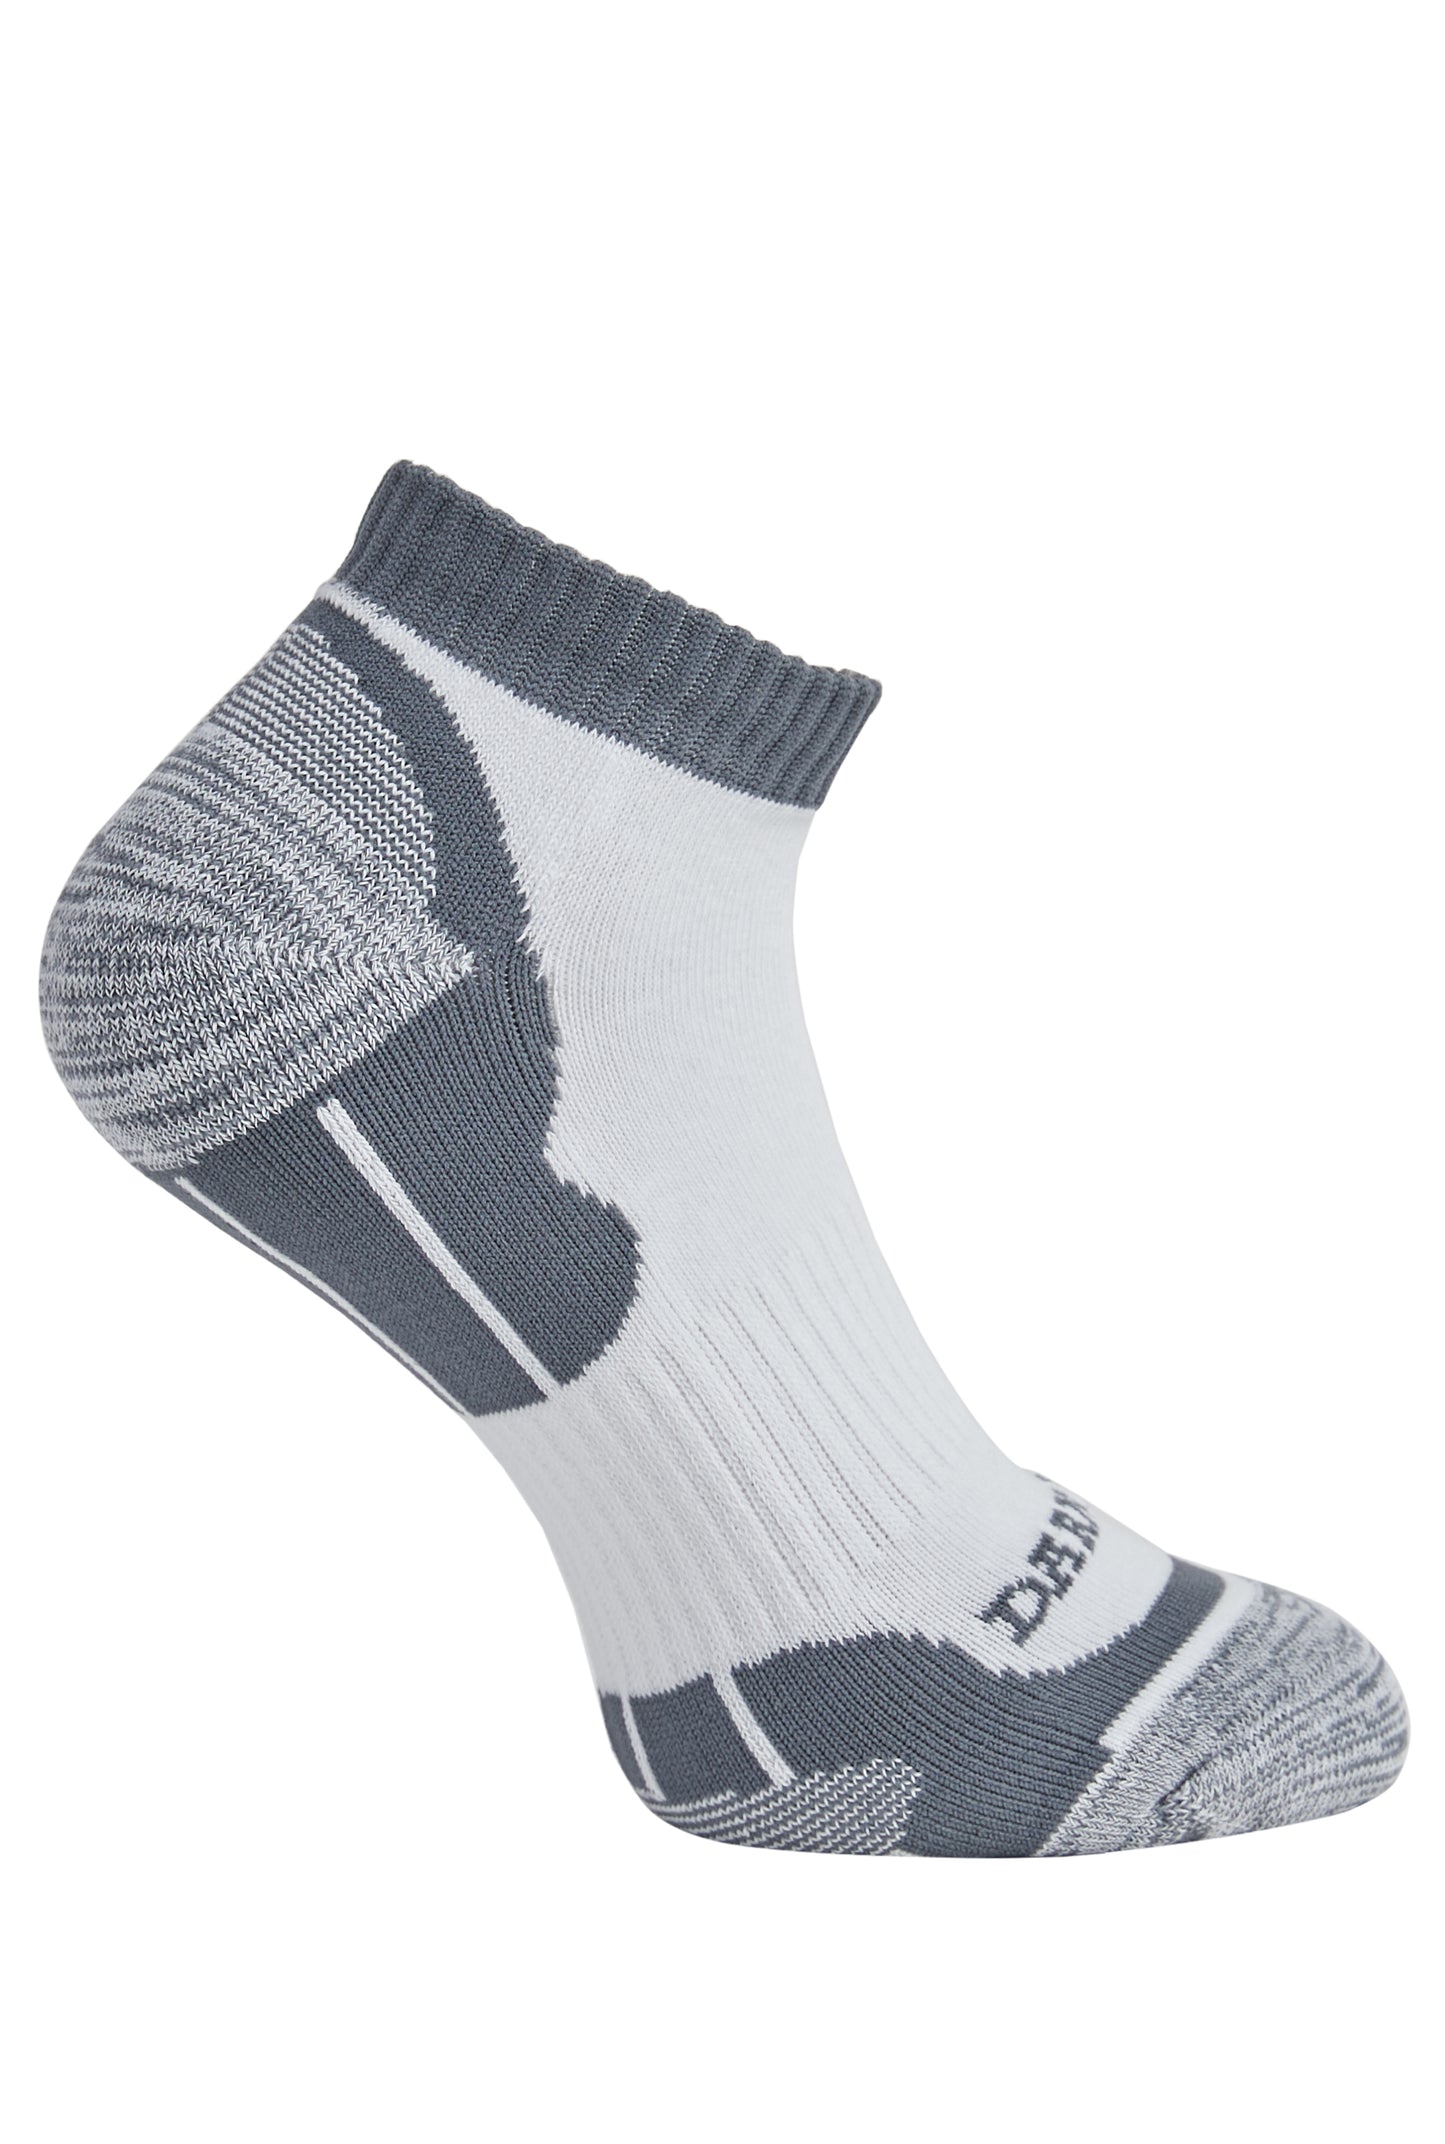 Side of Darn Tough Men's Sports Ankle Socks in Grey